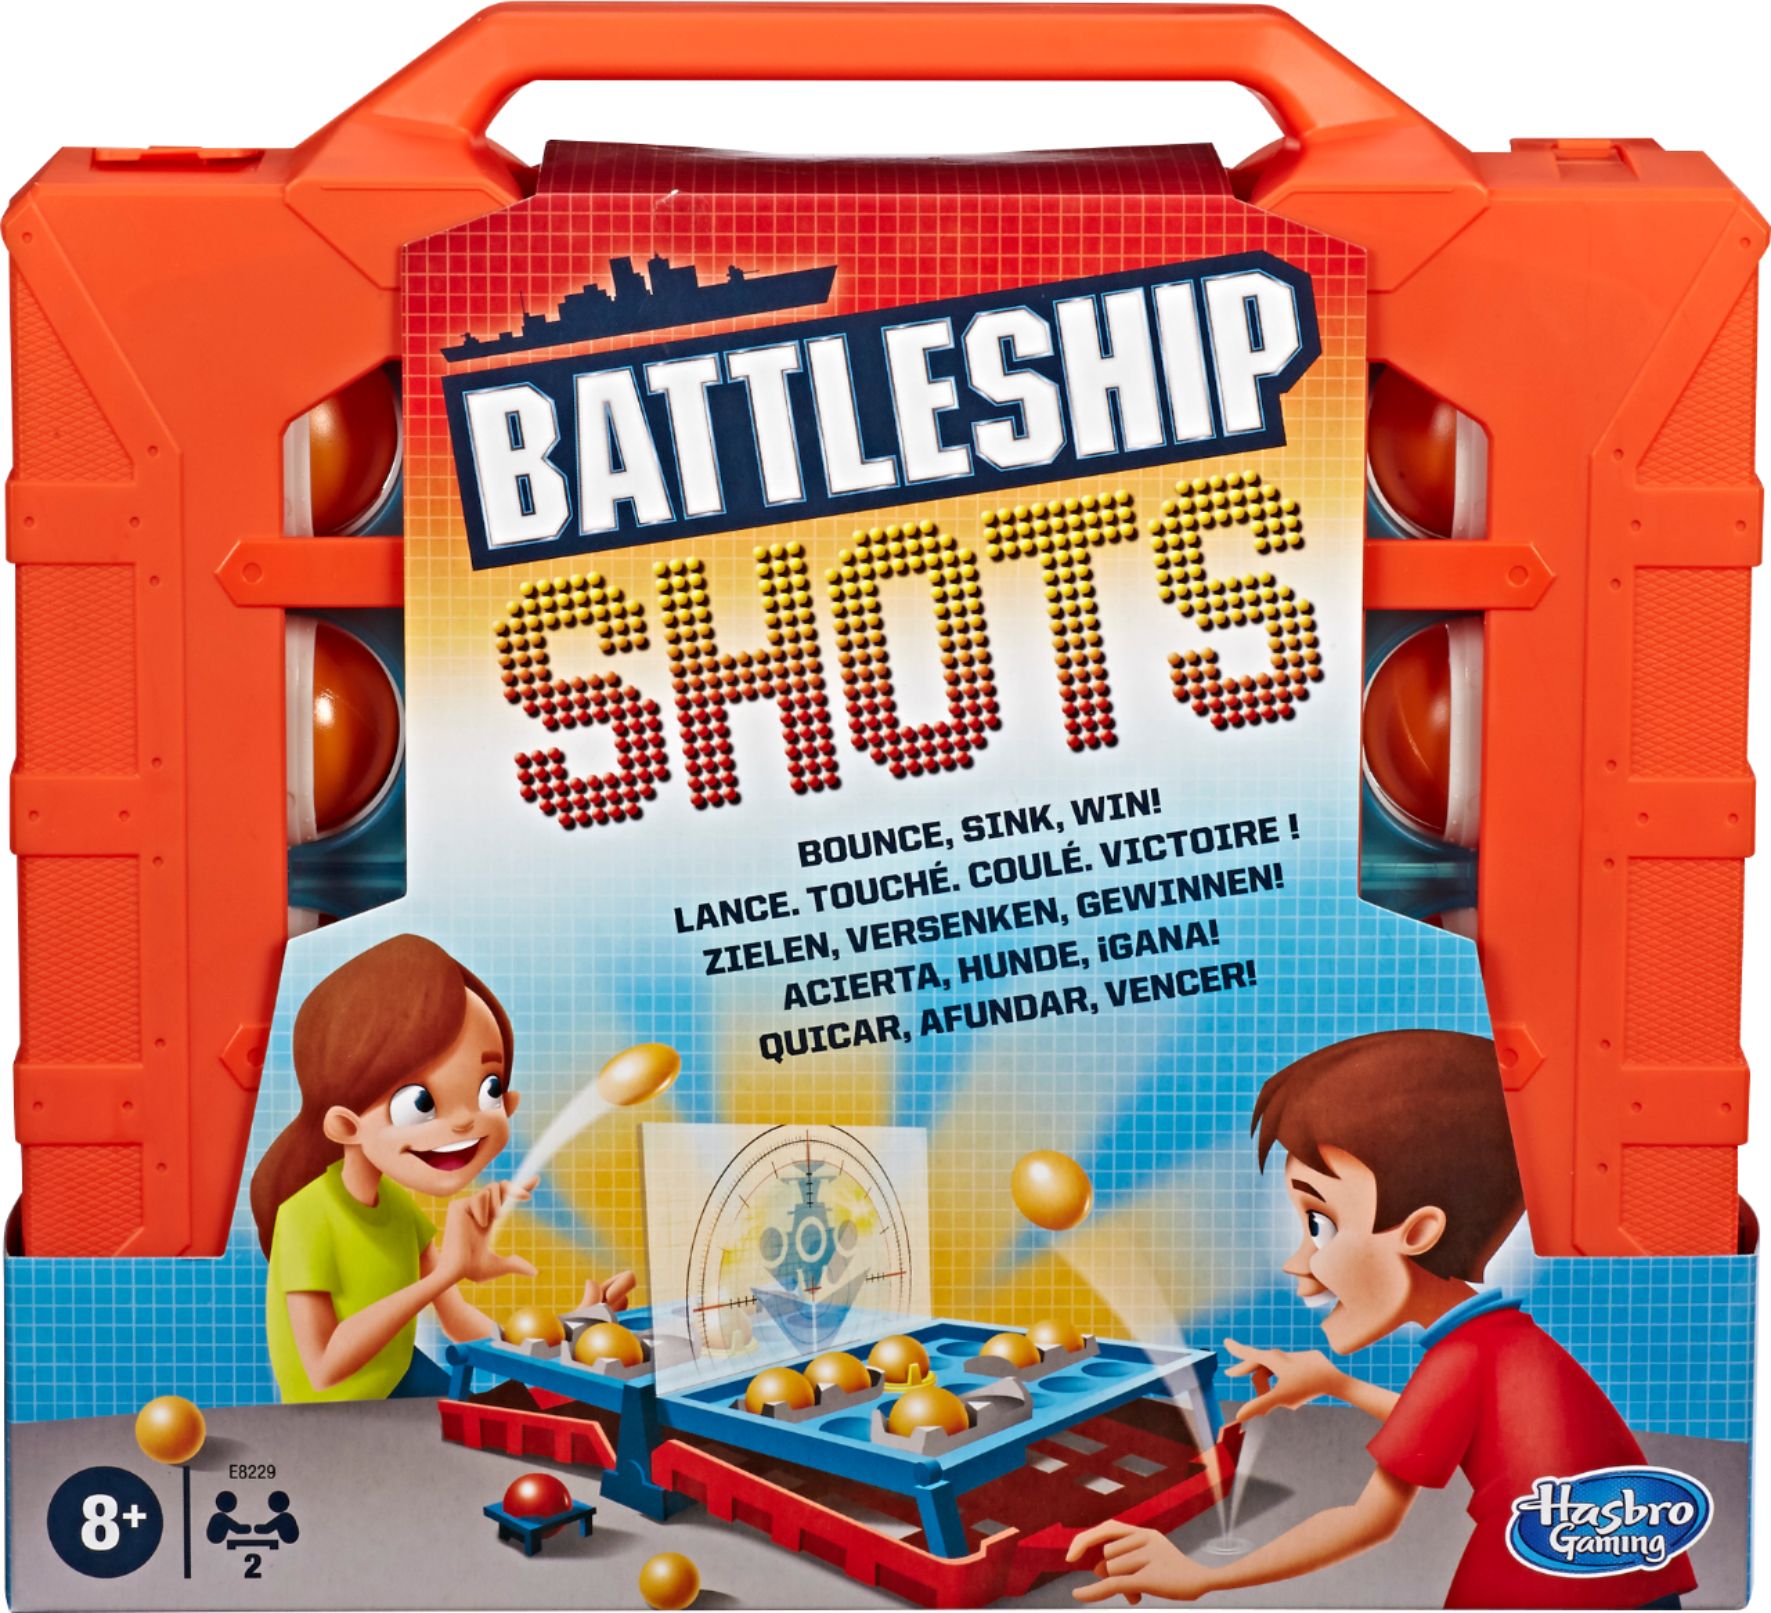 Hasbro Gaming - Battleship Shots Strategy Ball-Bouncing Game